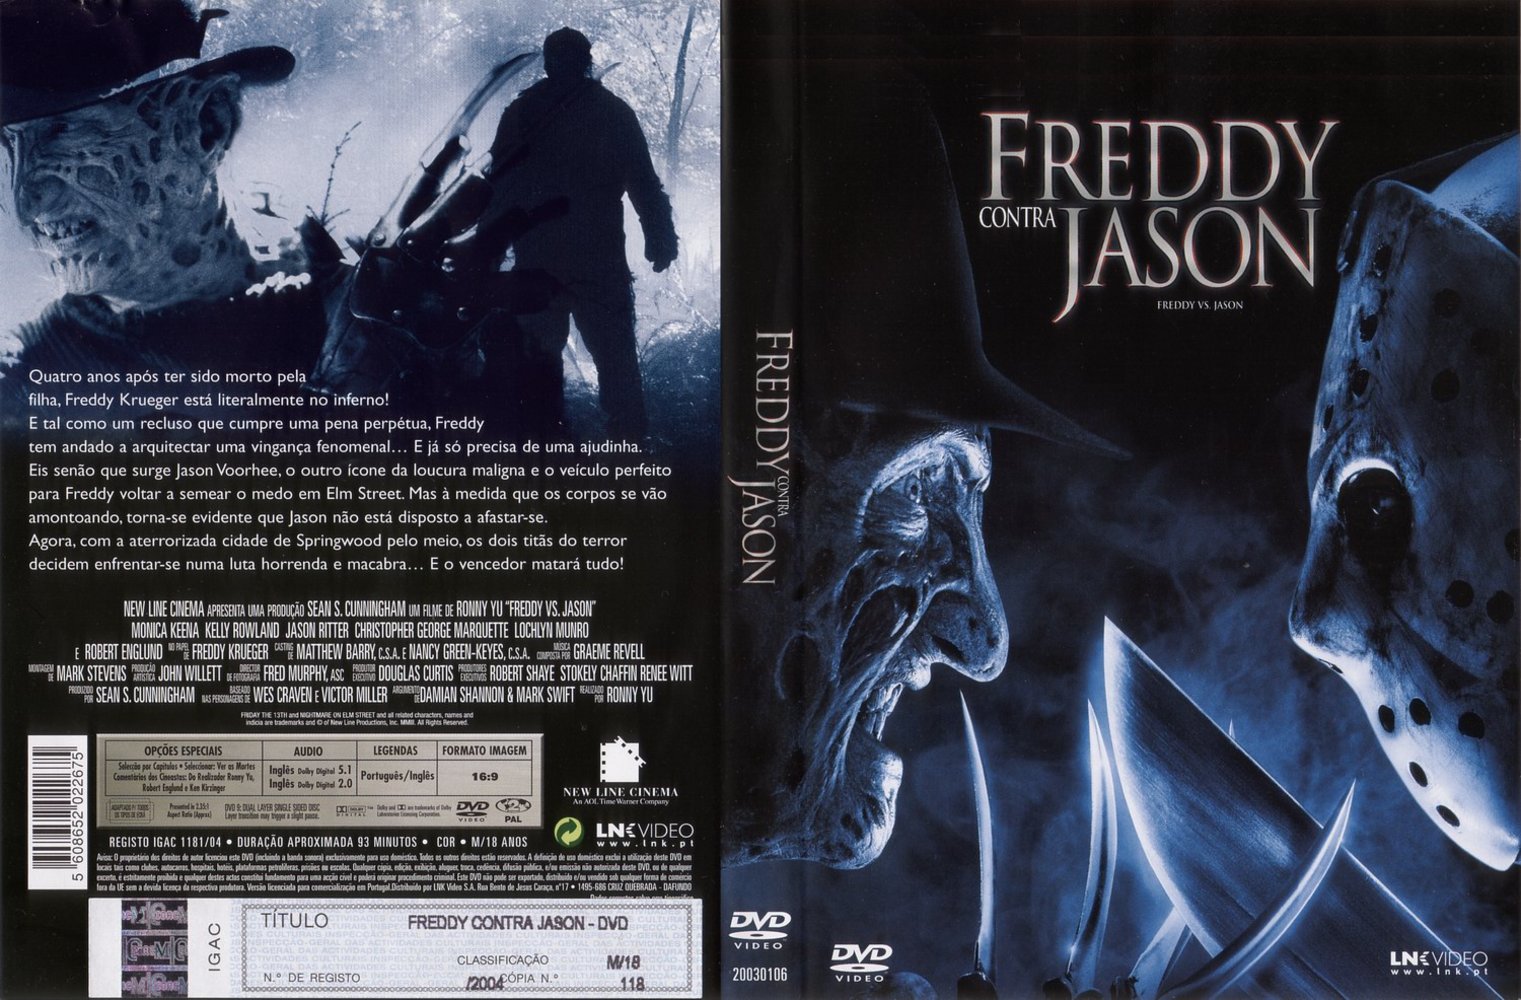 Фредди против джейсона 2003 1080. Фредди против Джейсона DVD. Фредди против Джейсона обложка DVD.